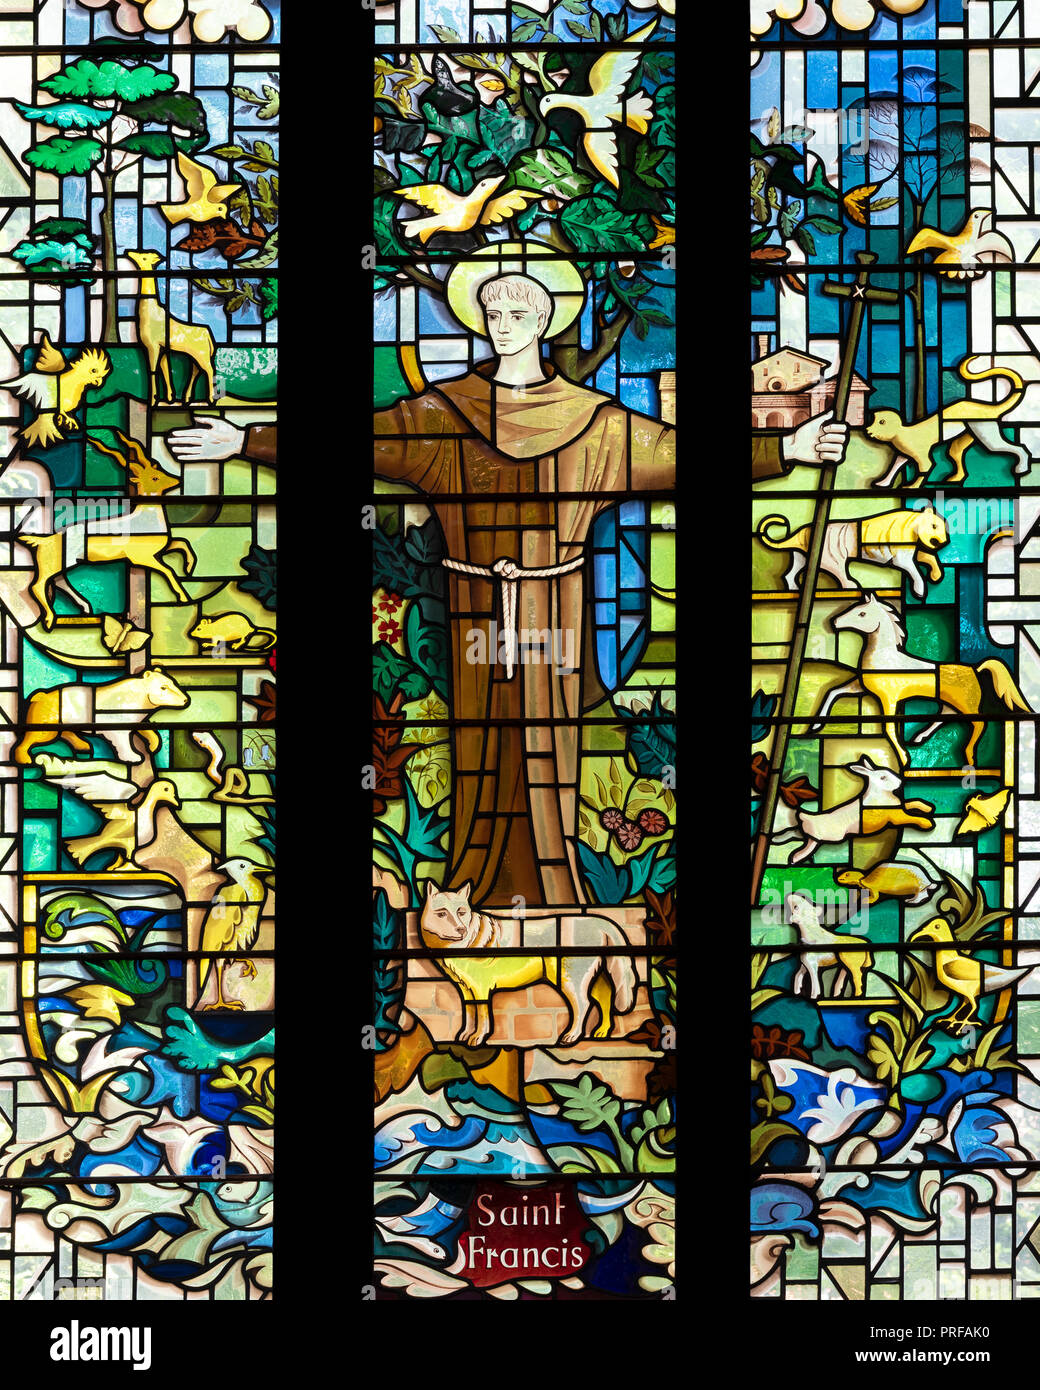 Saint François d'Assise, Saint Patron de l'écologie, de l'église paroissiale de Chesterfield, Derbyshire, Royaume-Uni. Banque D'Images